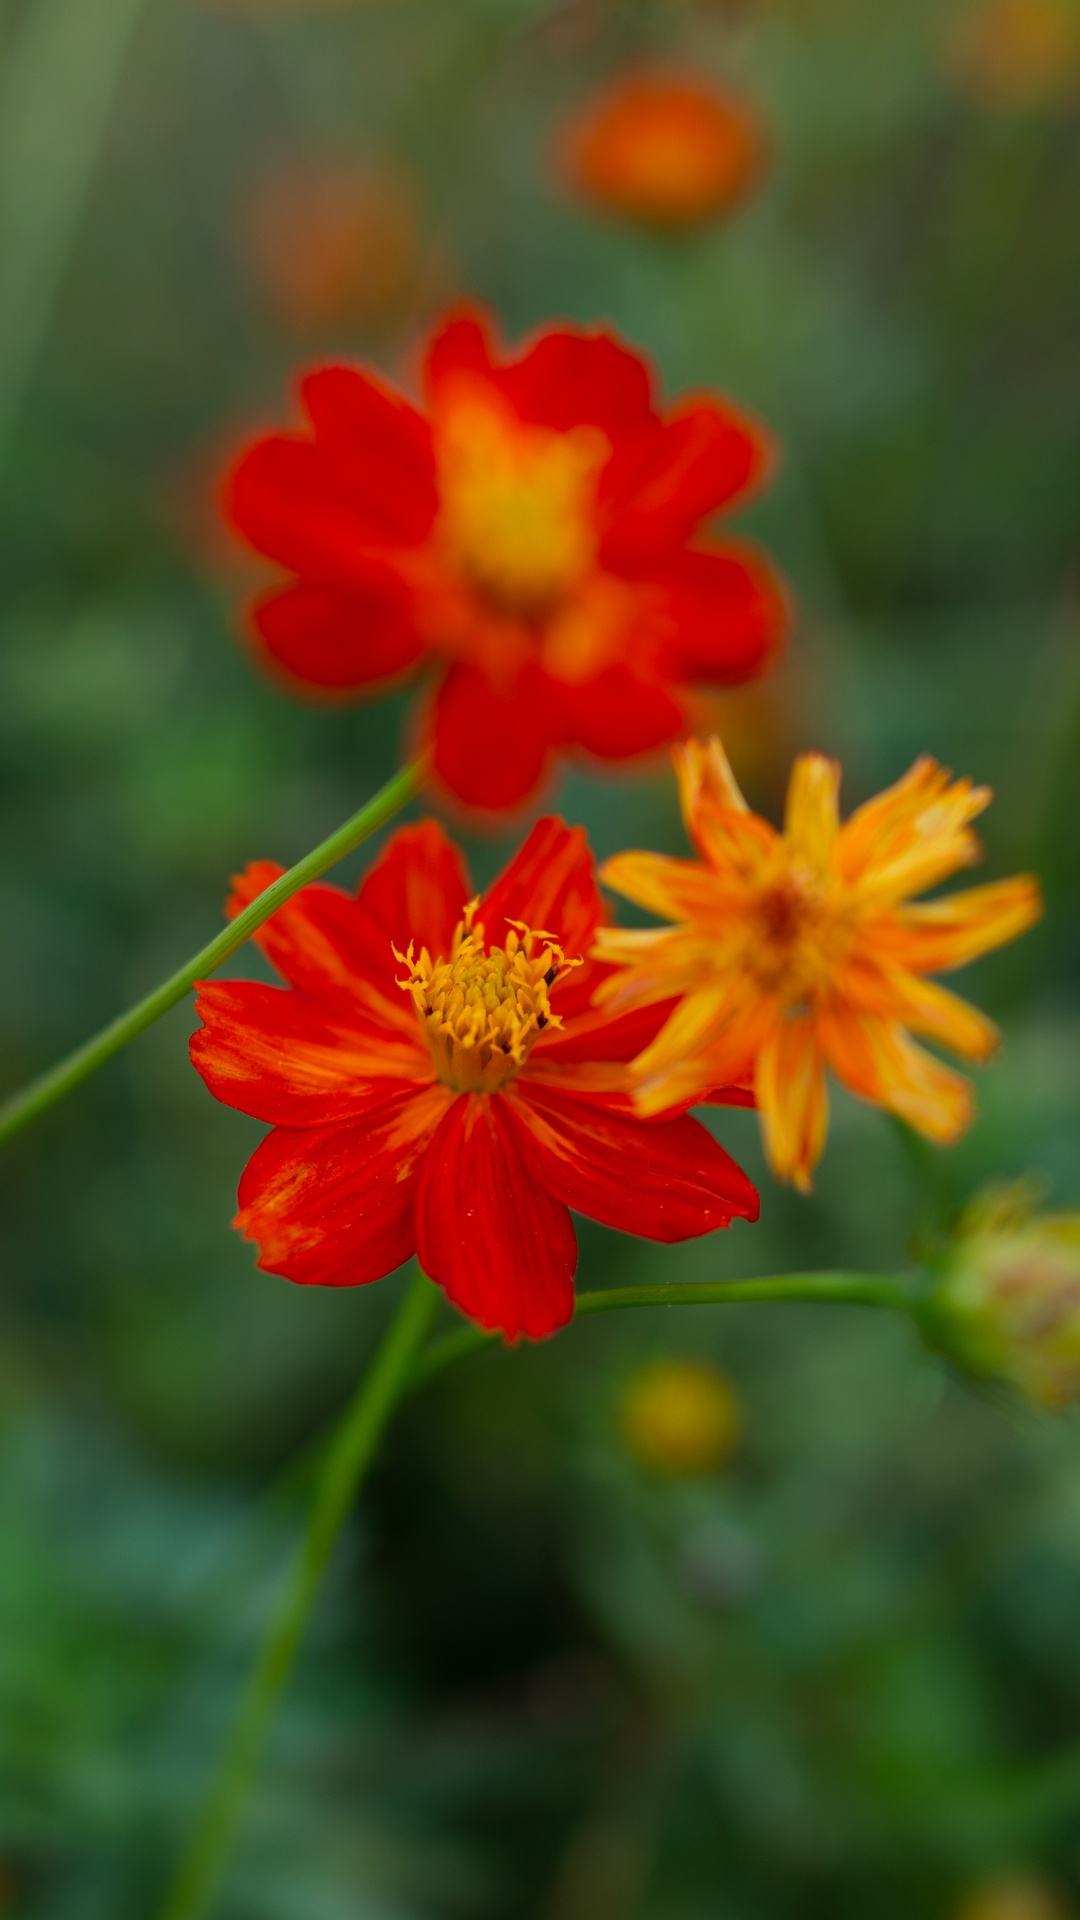 Red Flower in Tilt Shift Lens. Wallpaper in 1080x1920 Resolution